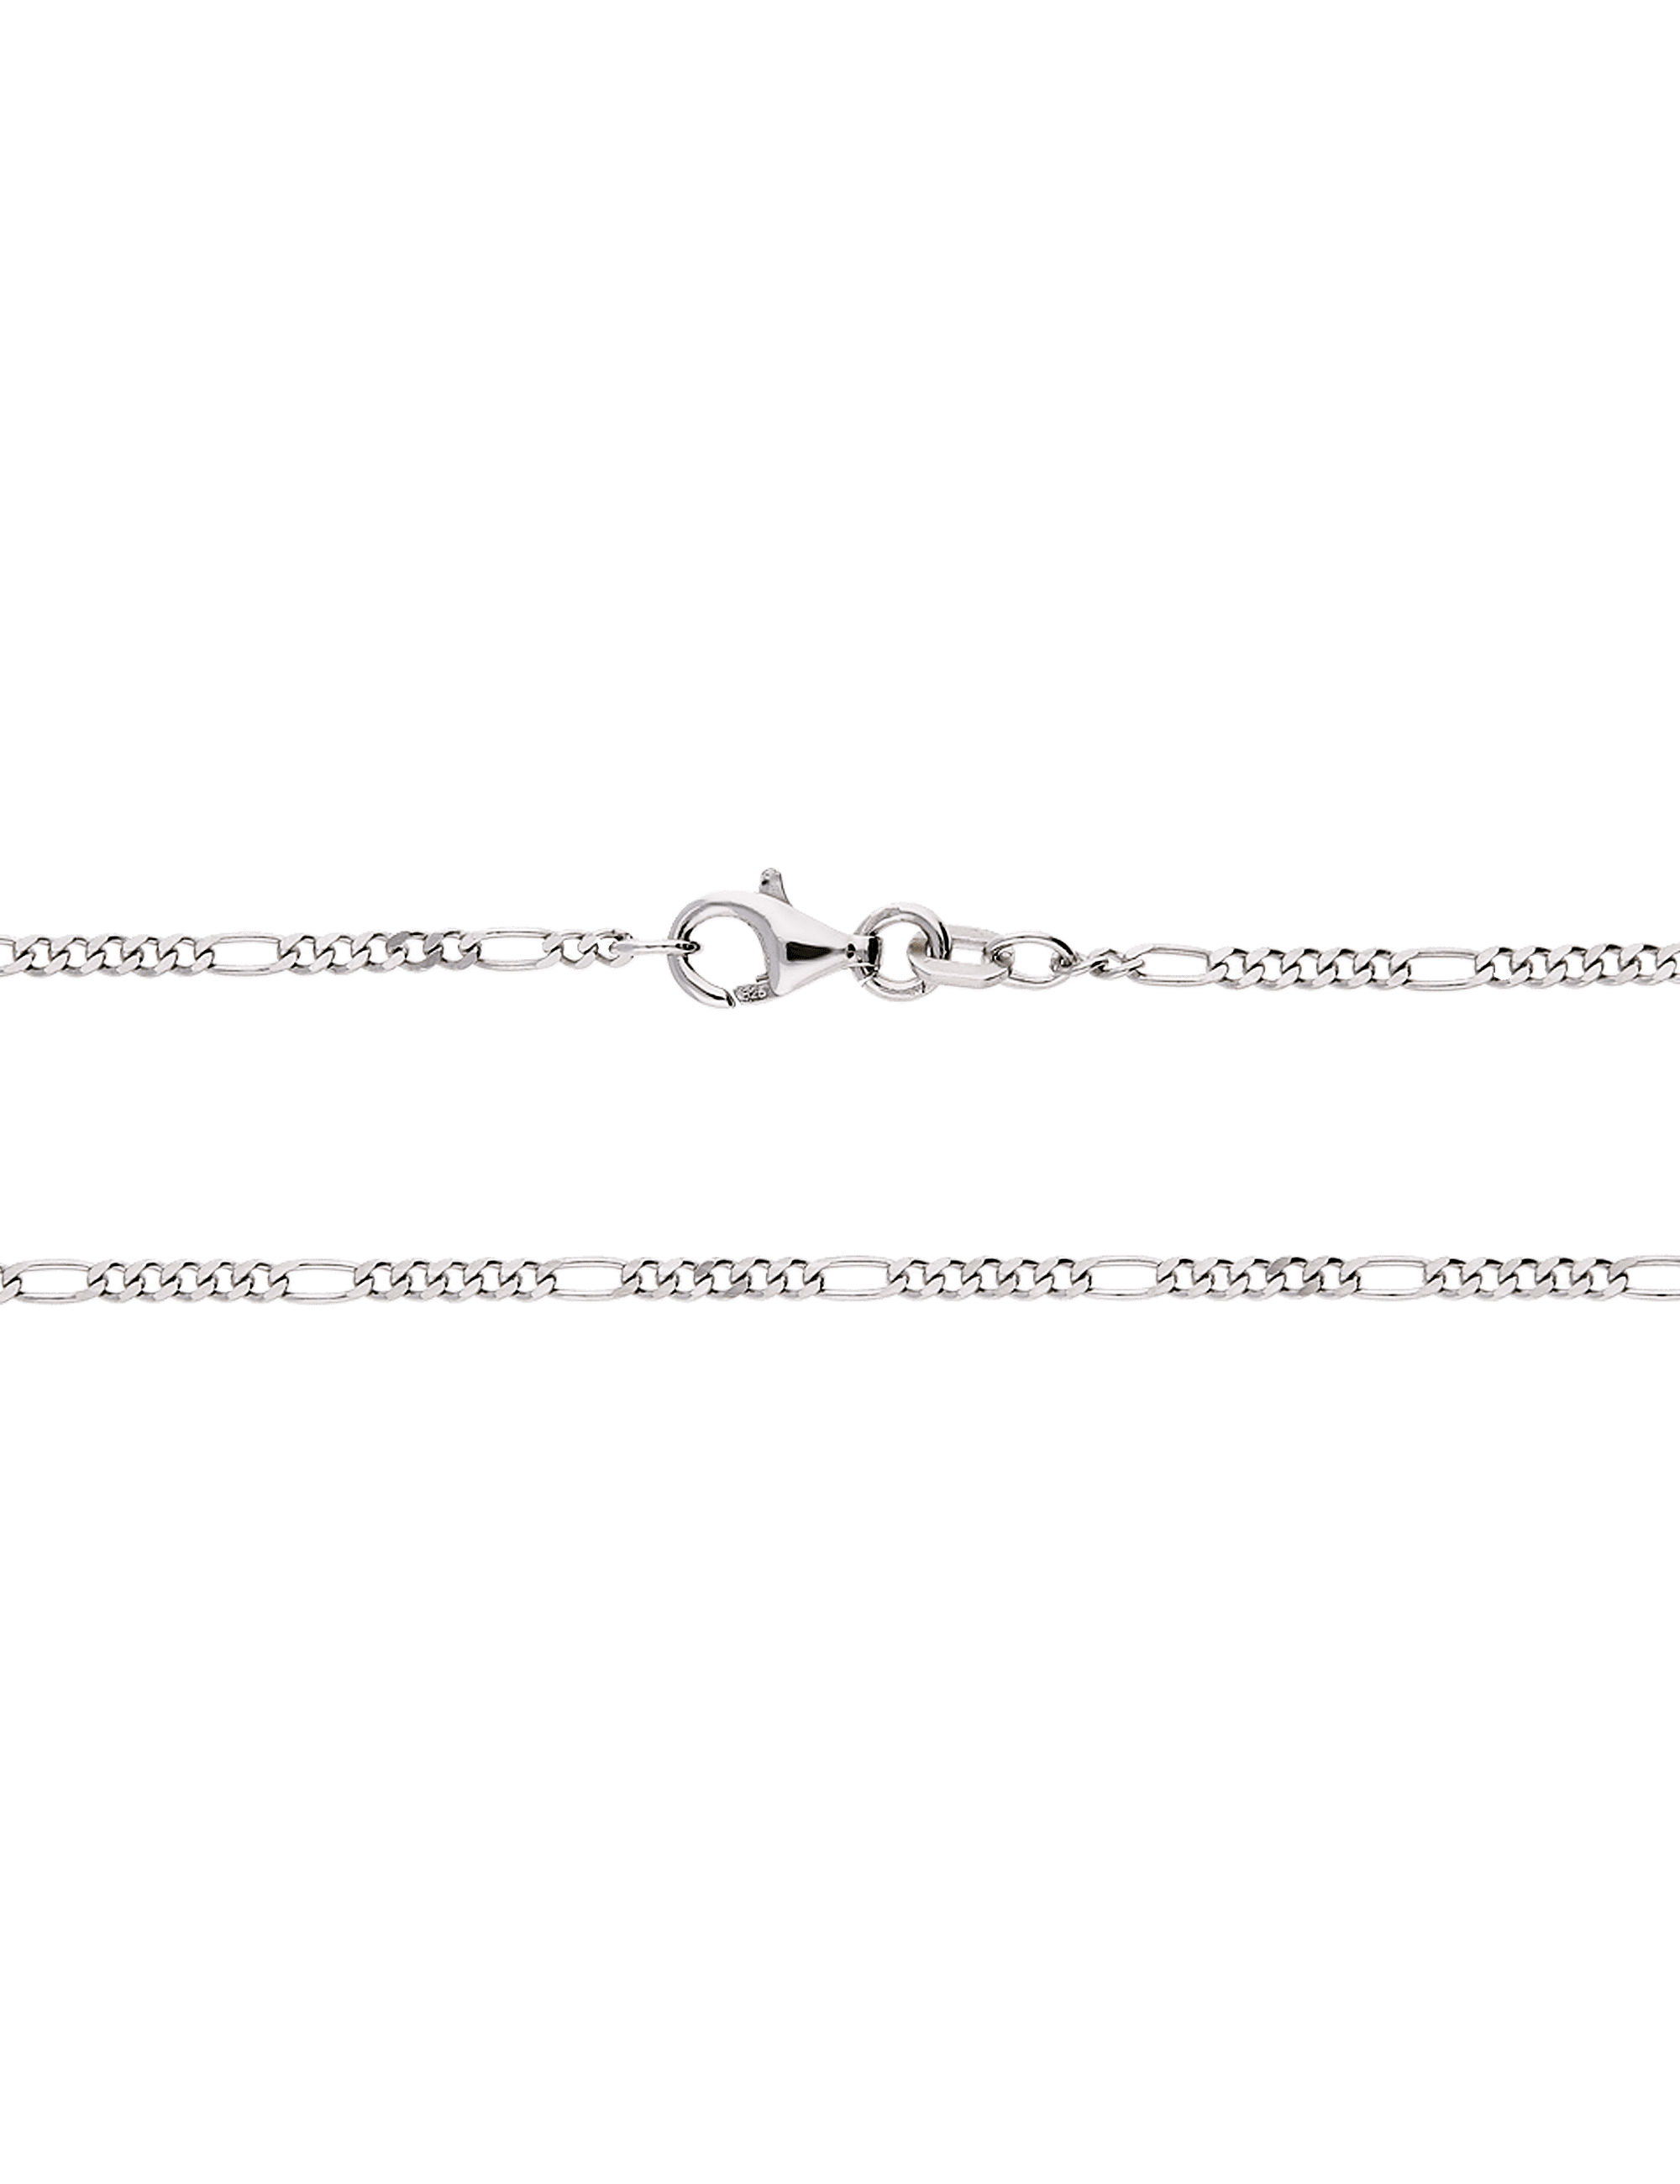 Silberkette Figaro rhodiniert diamantiert 60cm 